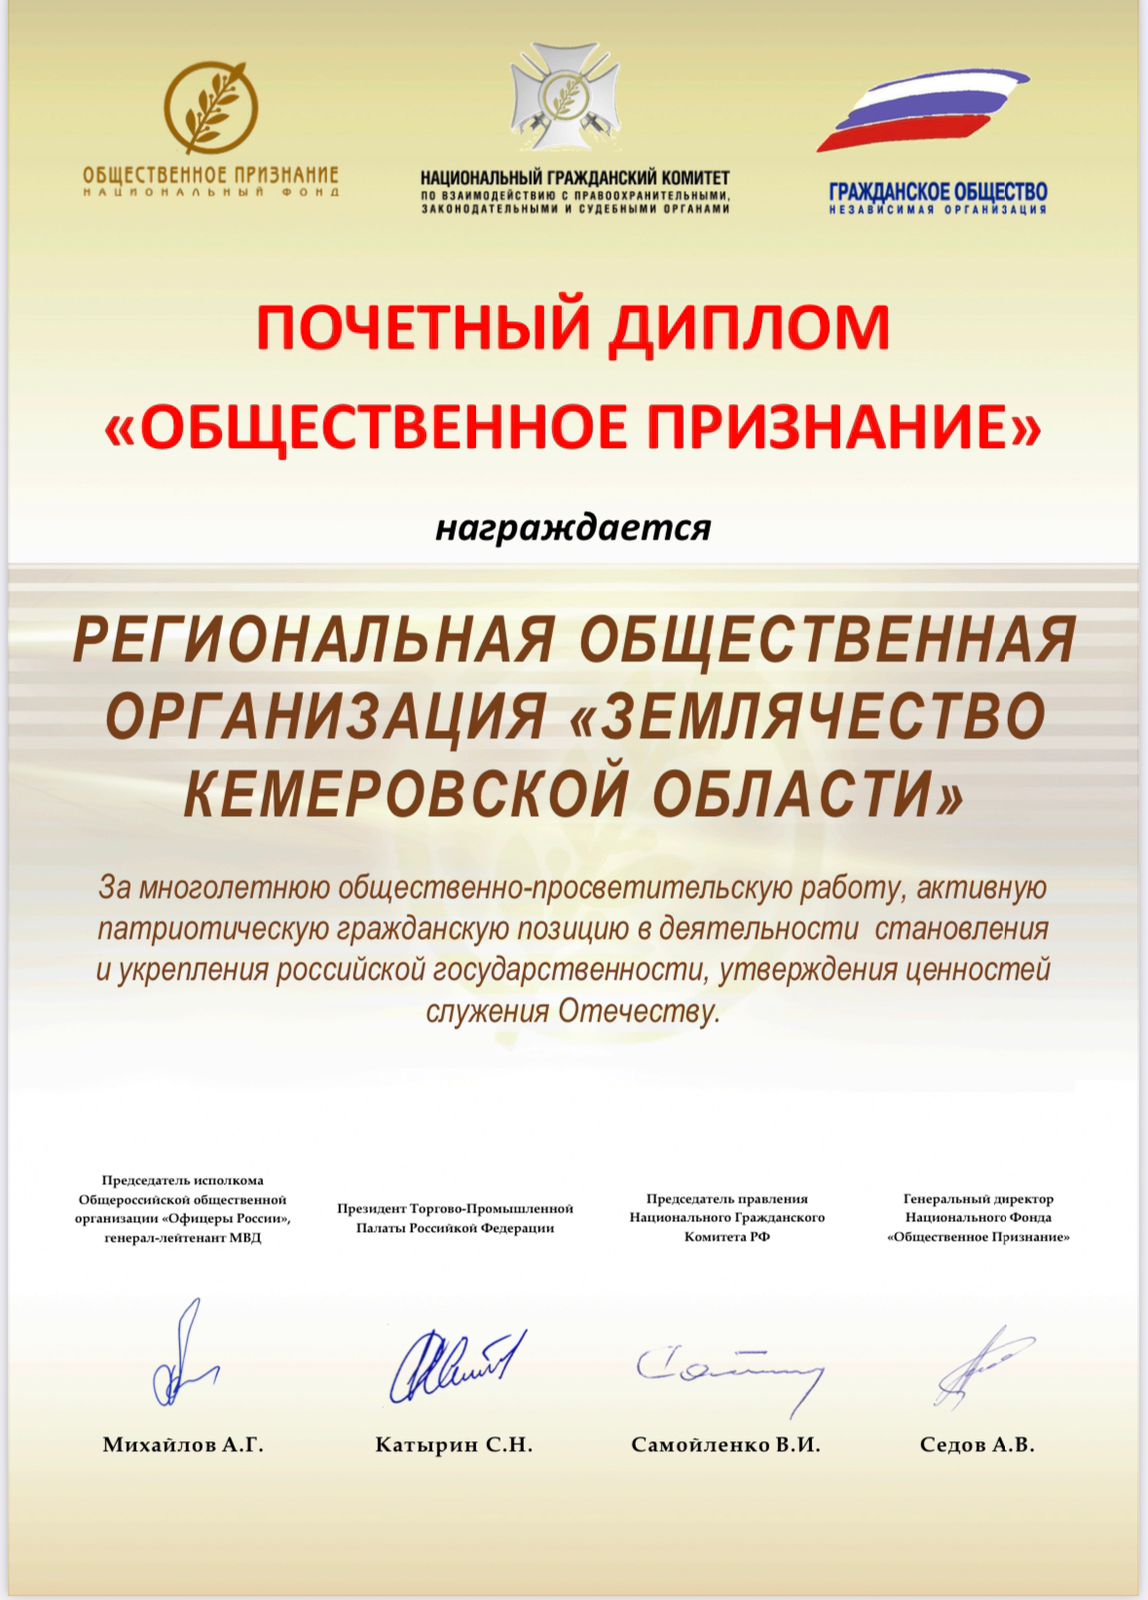 РОО «Землячество Кемеровской области» стала Кавалером высокой гражданской награды.